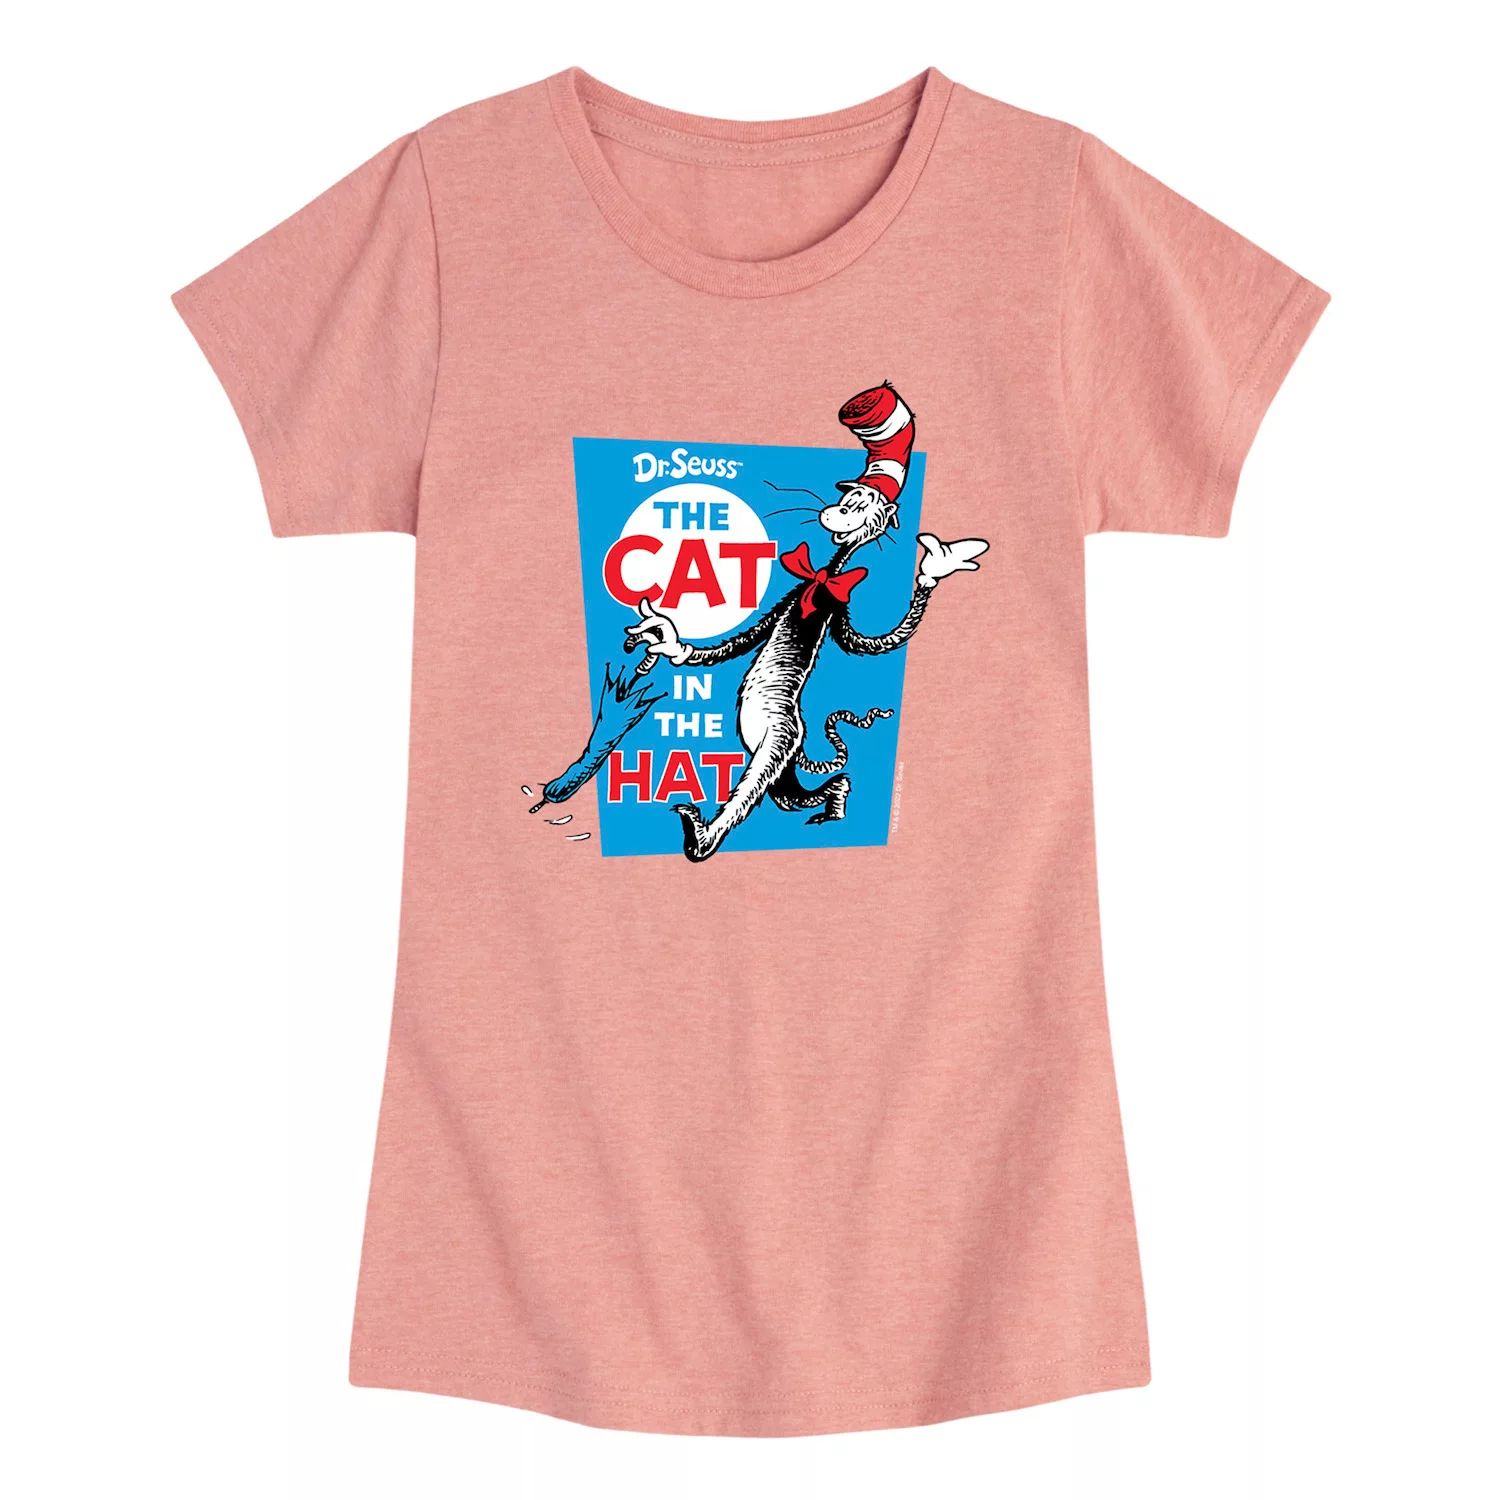 Футболка с рисунком «Кот в шляпе» для девочек 7–16 лет «Доктор Сьюз» Licensed Character, розовый футболка с рисунком доктор сьюз для девочек 7–16 лет места куда я пойду dr seuss розовый